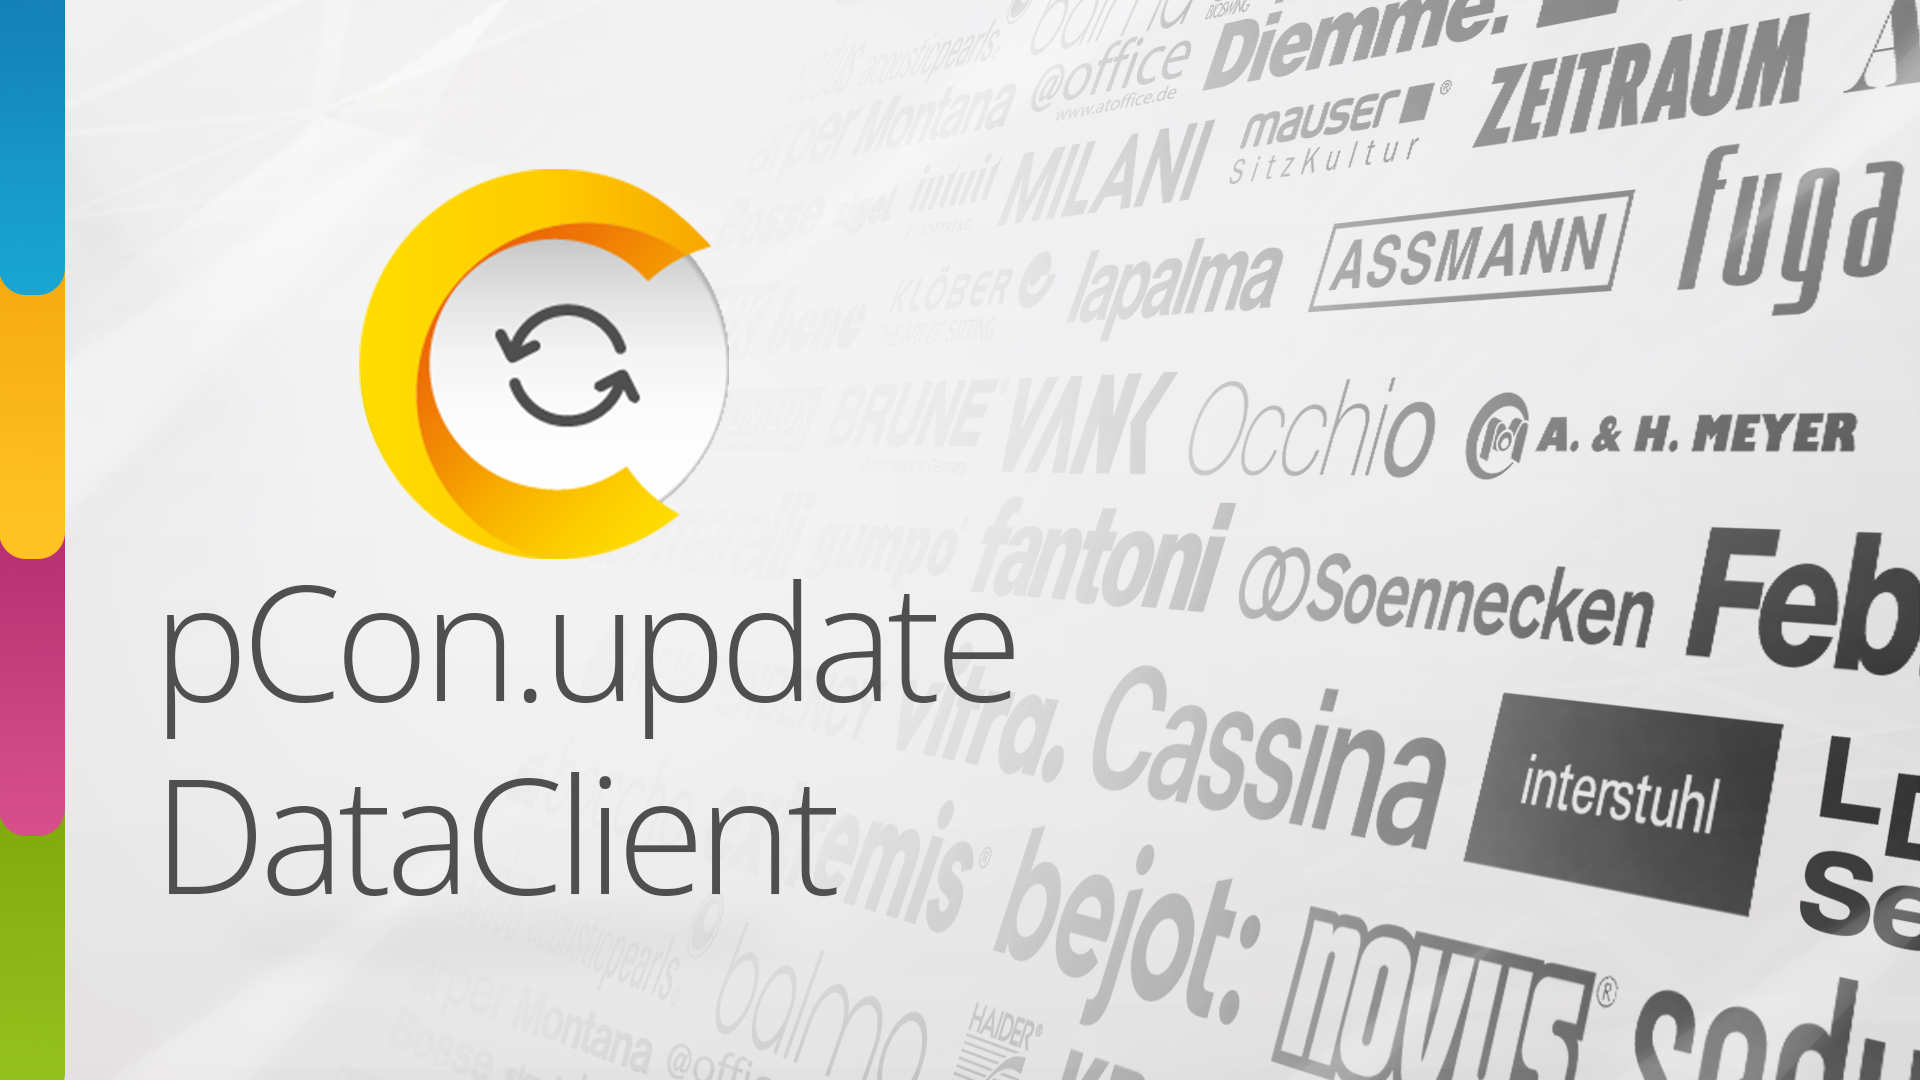 pcon.update DataClient downloaden en installeren Thumbnail